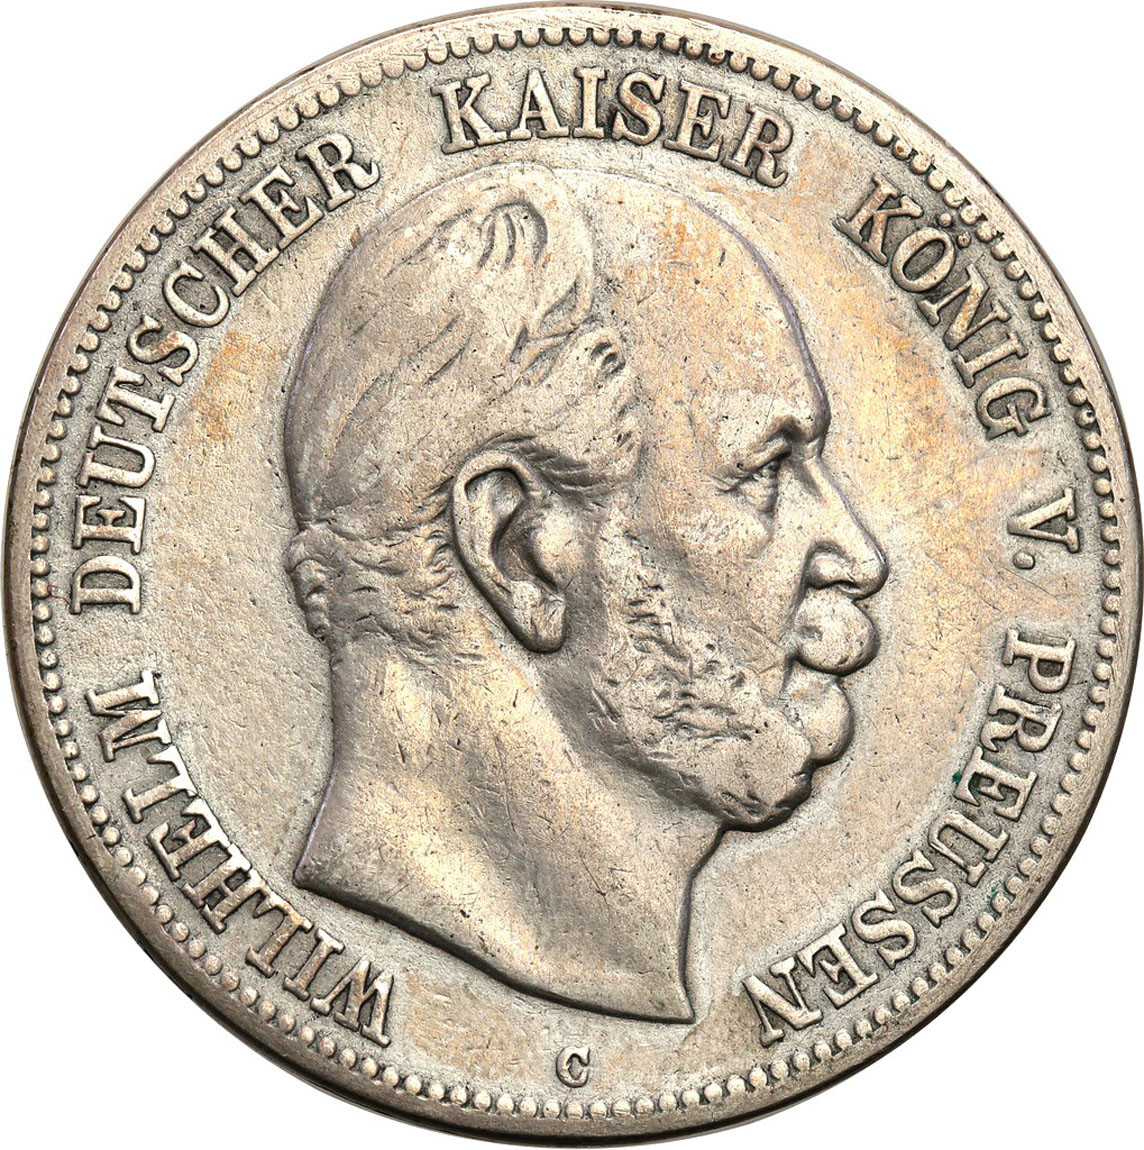 Niemcy, Prusy. 5 marek 1876 C, Frankfurt